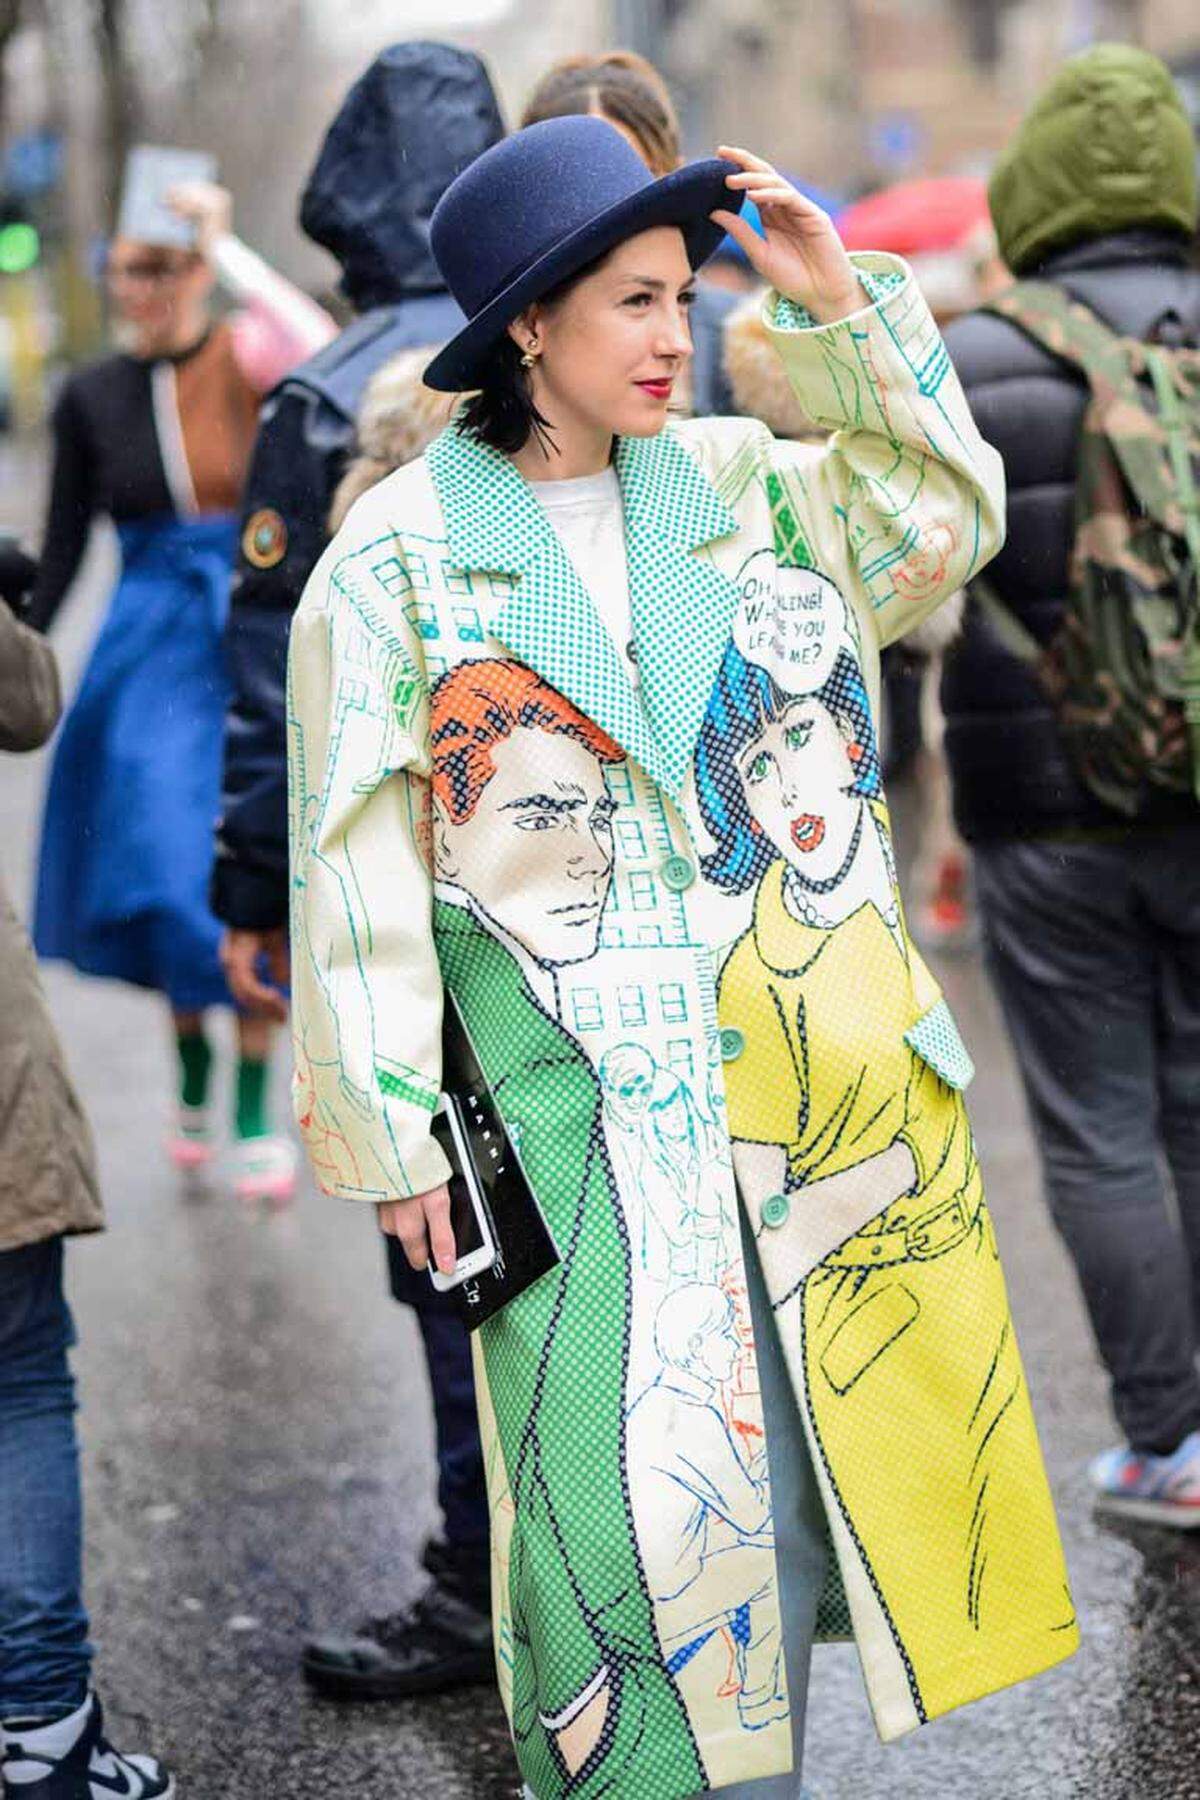 Diese modebegeisterte Dame ist wohl ein Fan von Pop Art.